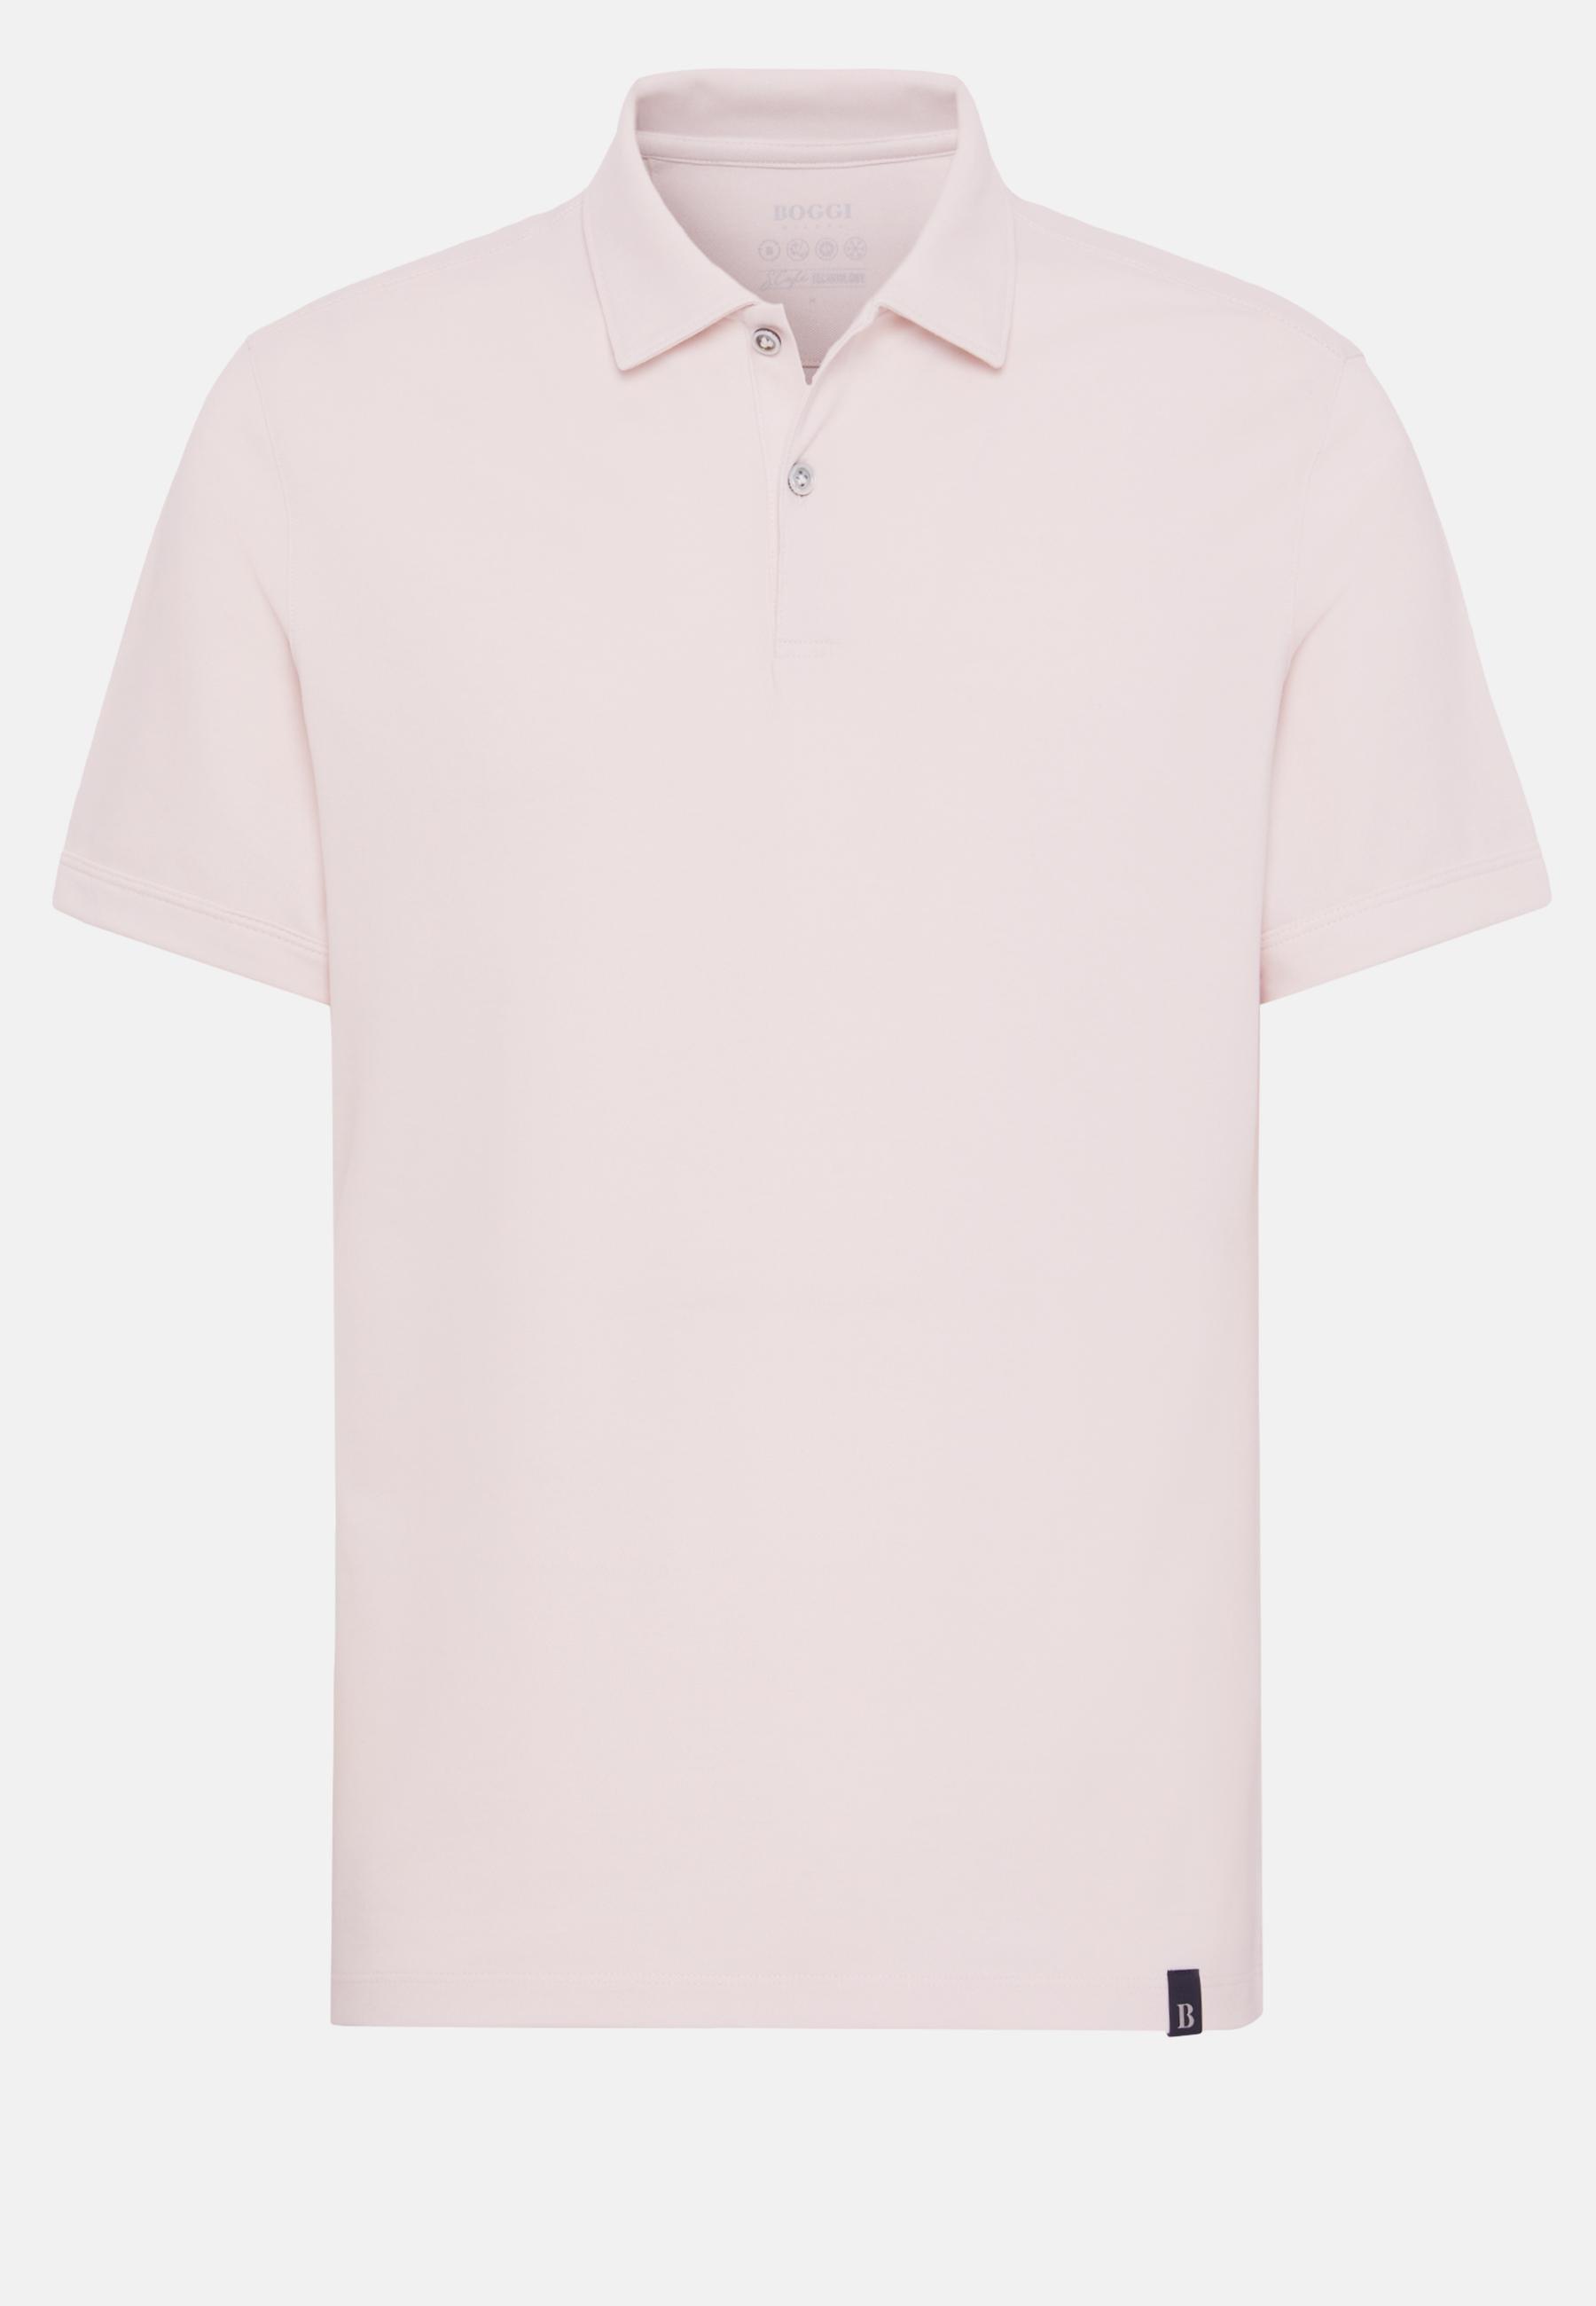 Boggi Milano - Pink High-Performance Pique Polo Shirt